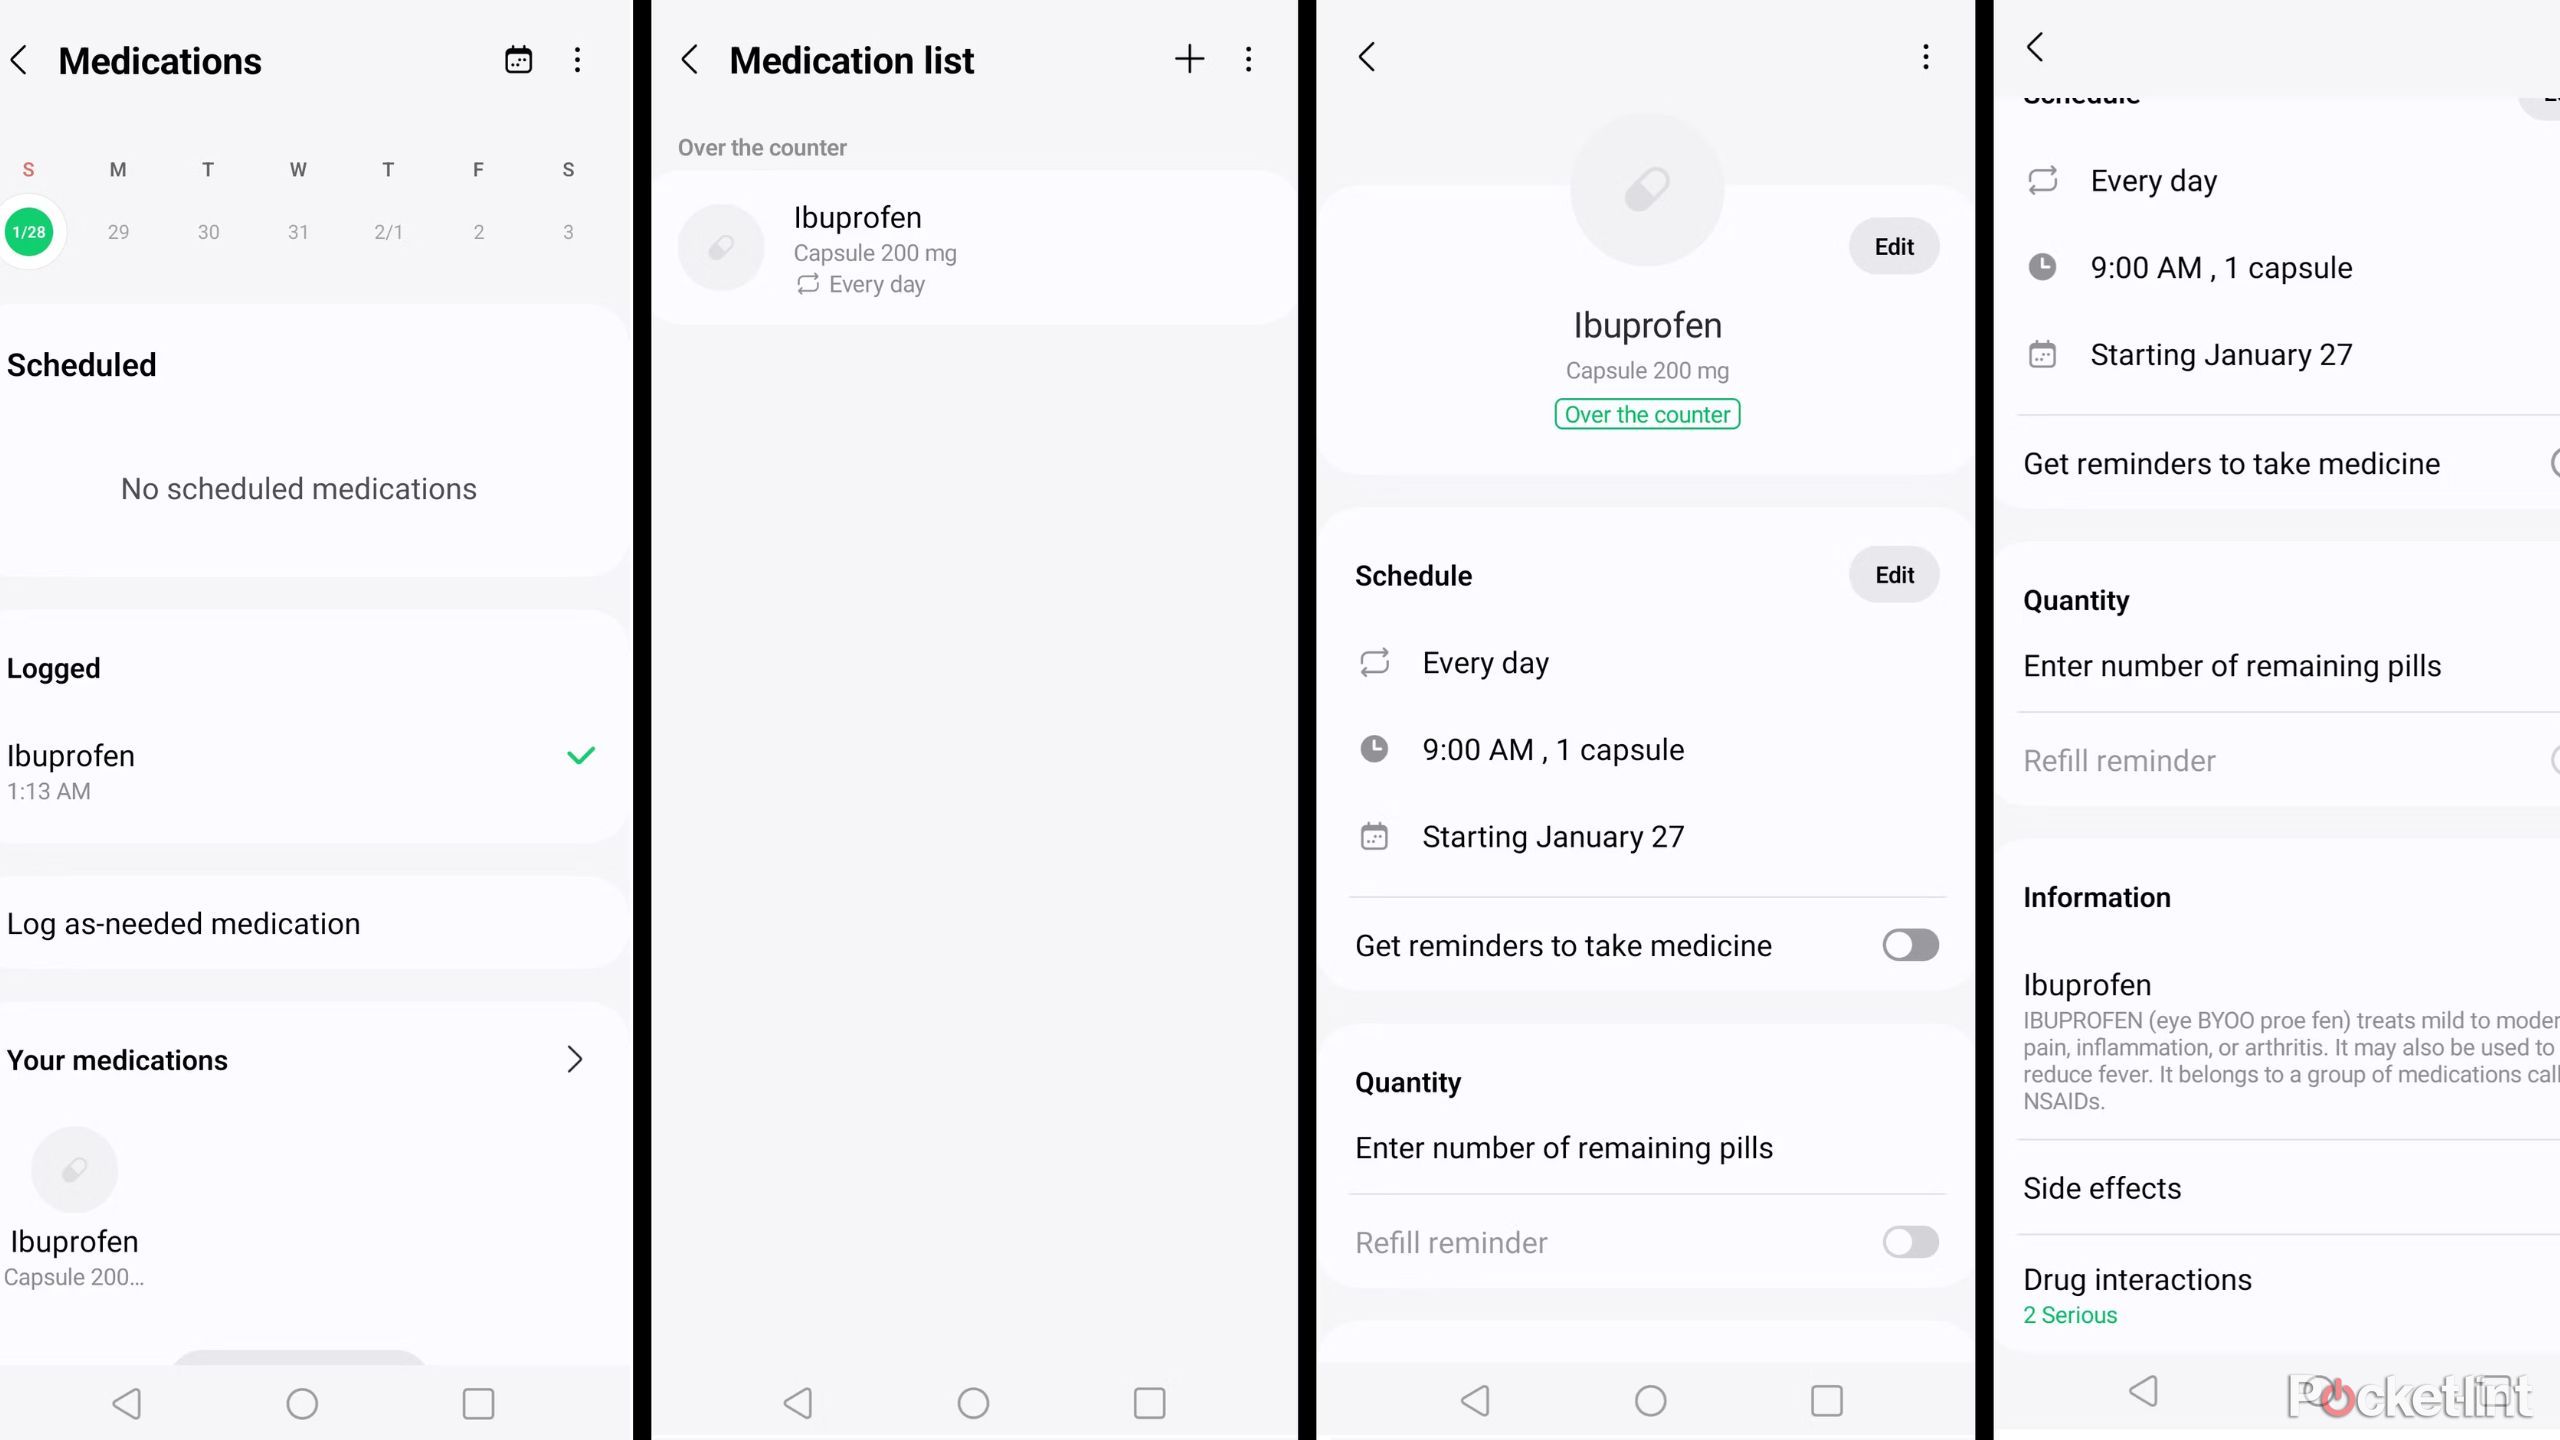 Samsung health medication tracking individual medication settings menu screenshot